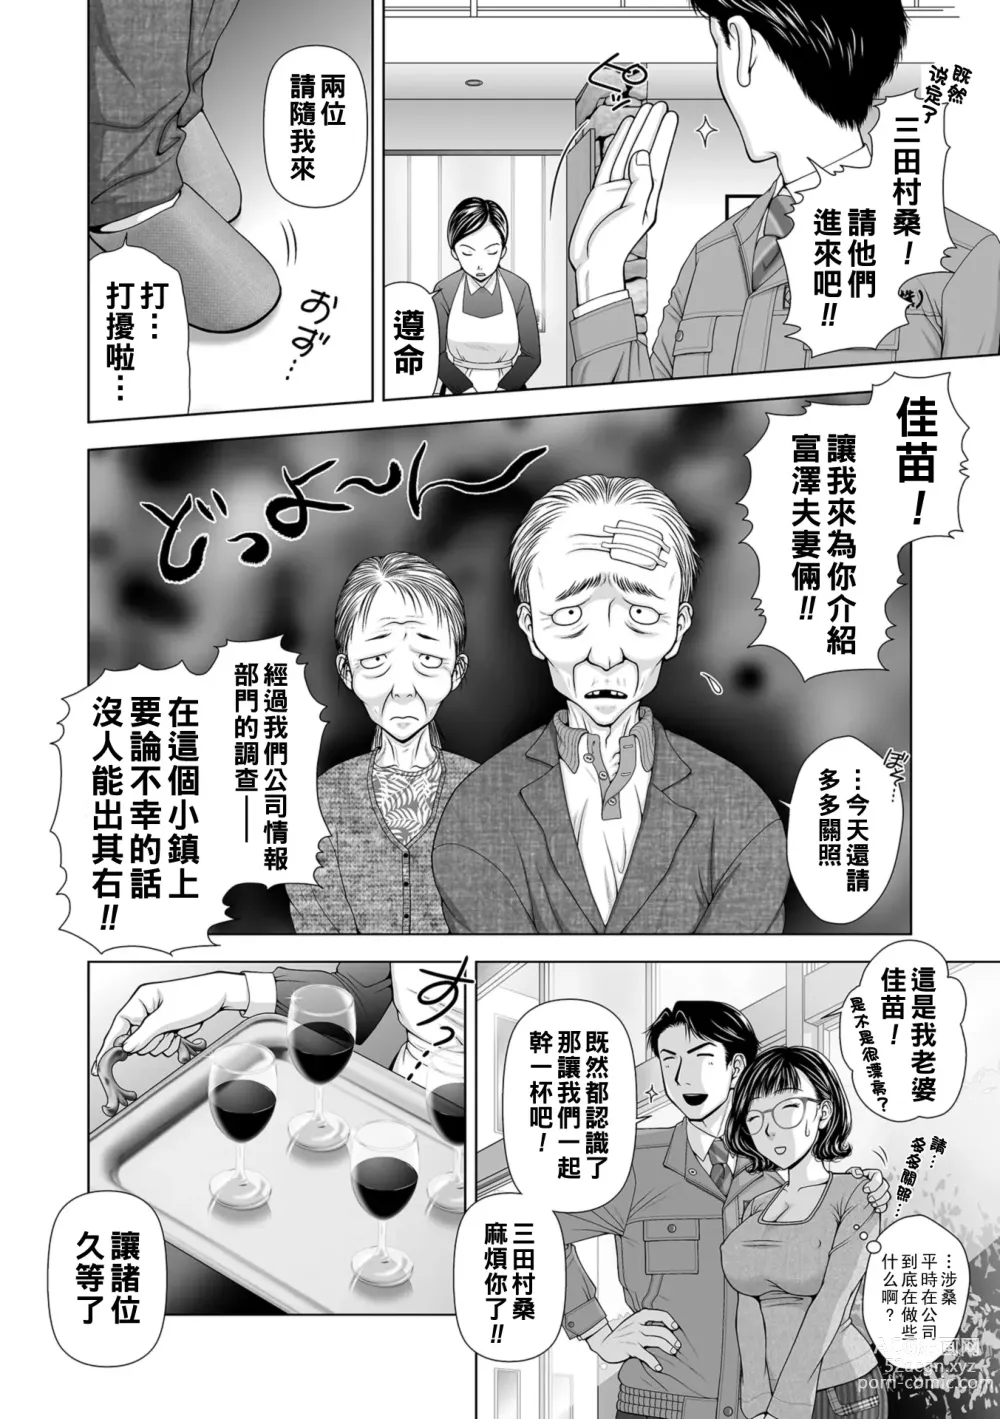 Page 4 of manga Ageman-Sama.